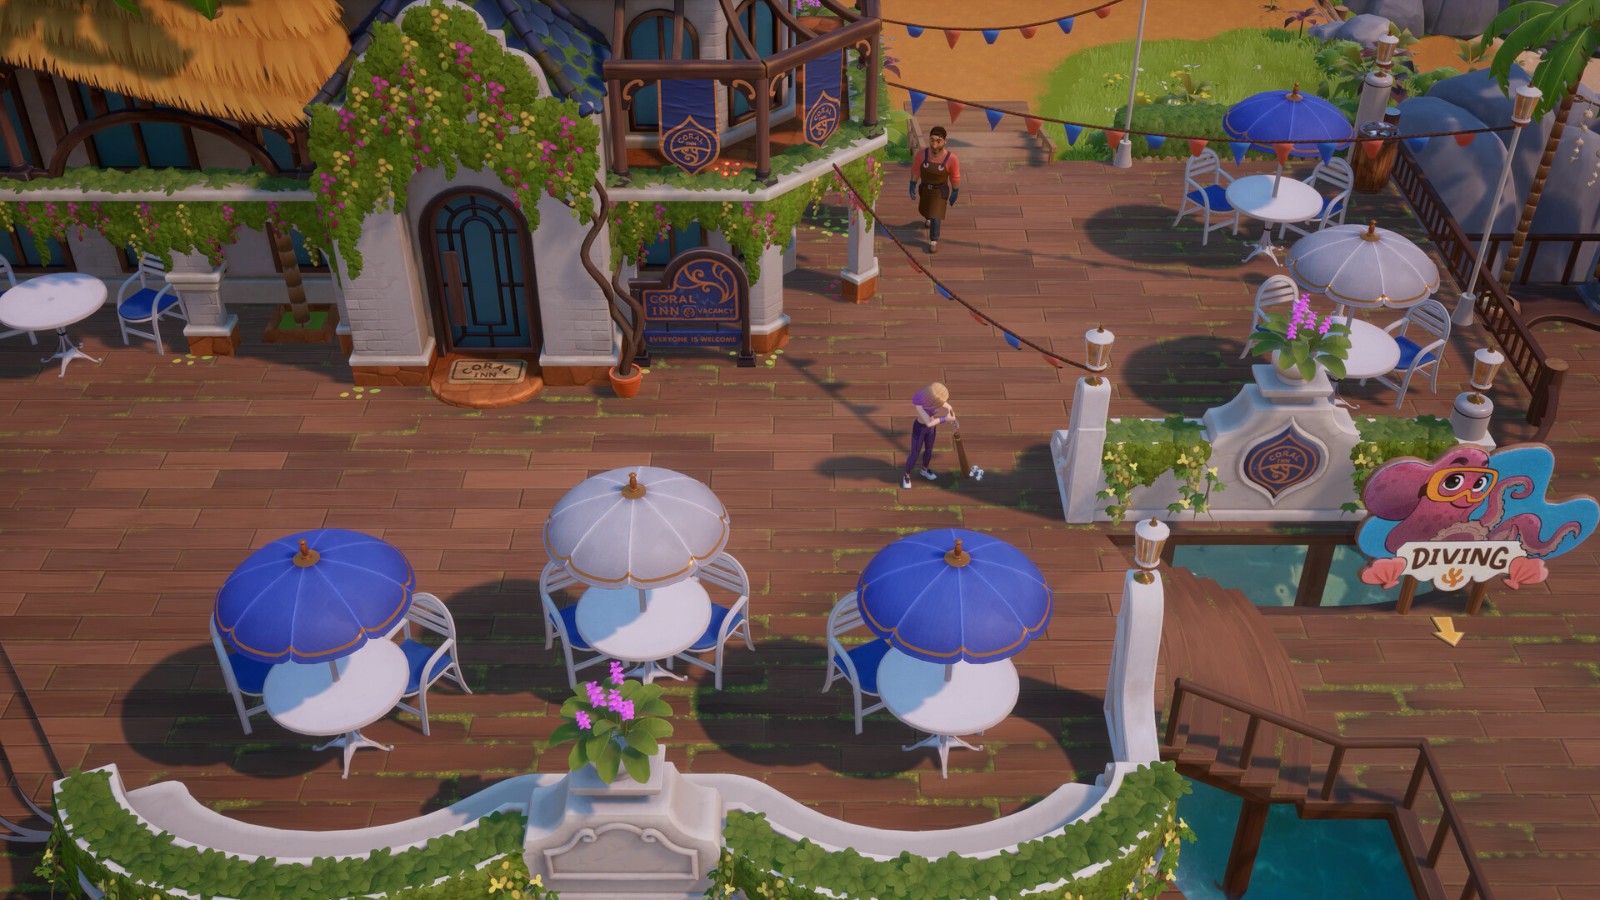 农场休闲模拟游戏《珊瑚岛》10月11日登陆Steam抢先体验